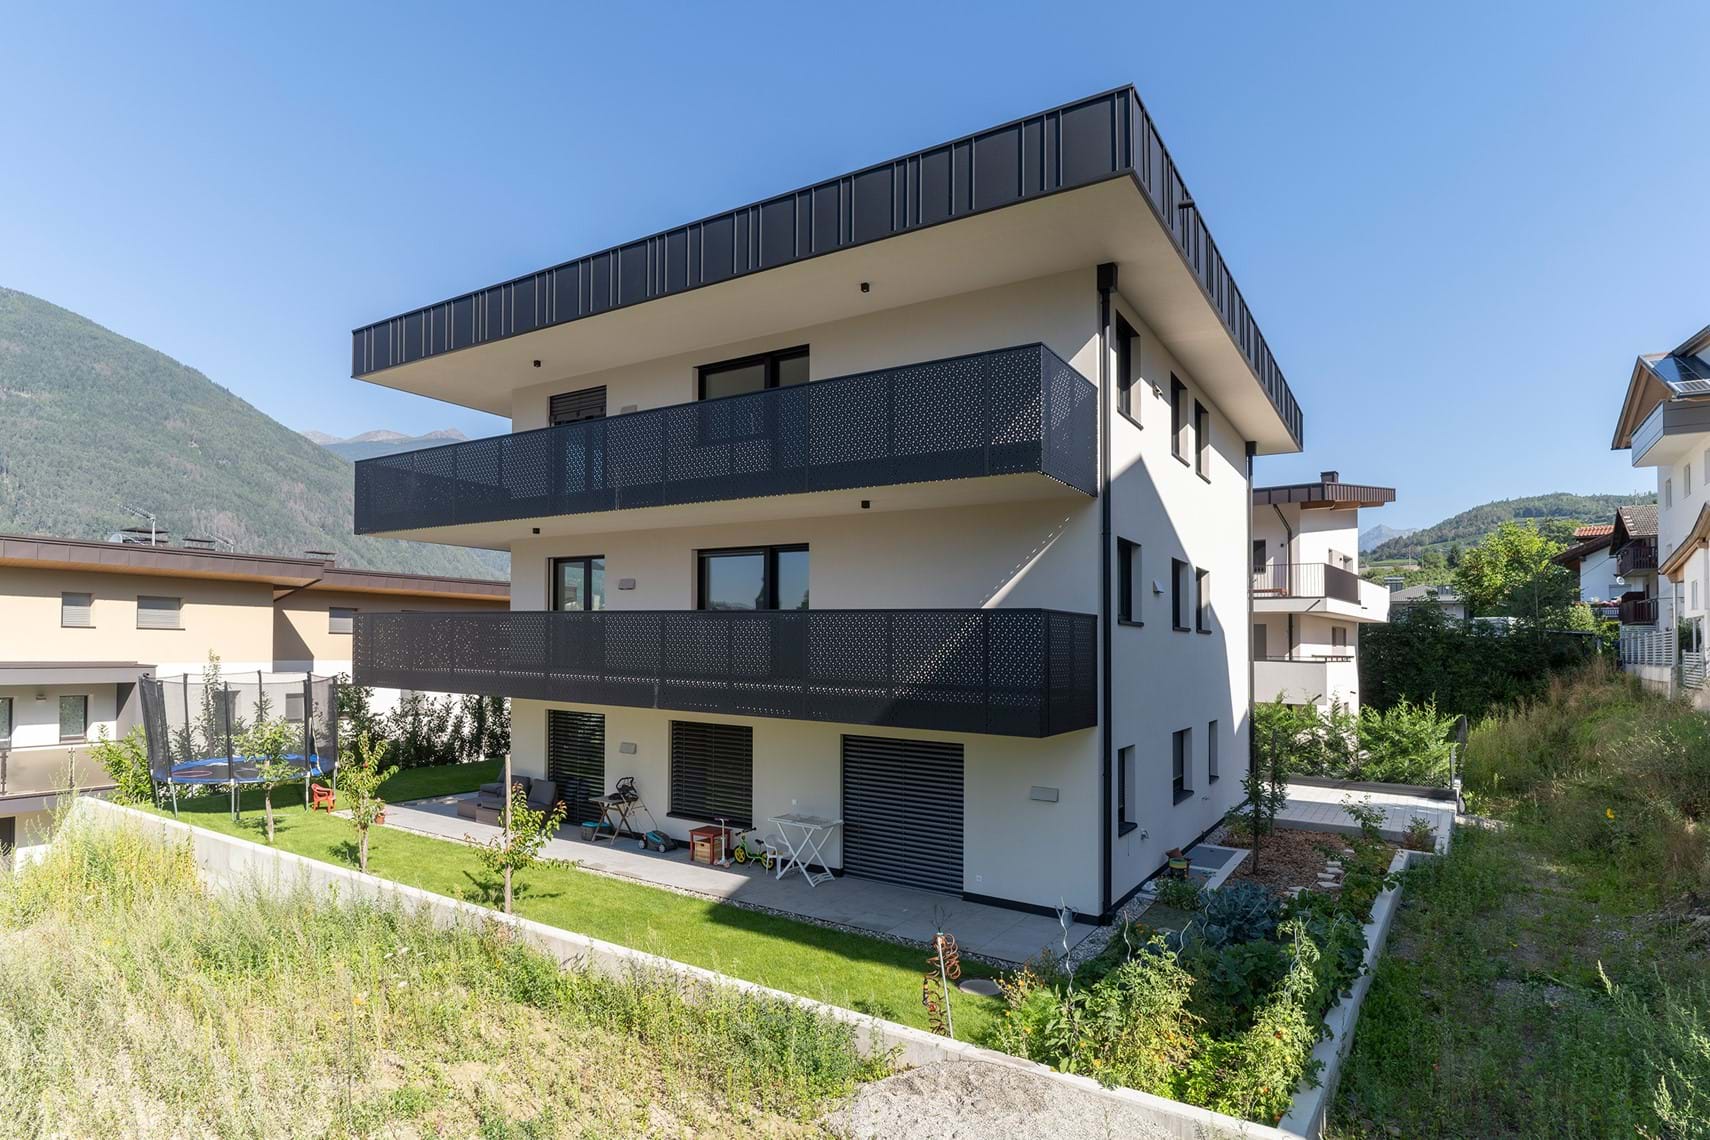 Wohnhaus, Elvas / Brixen